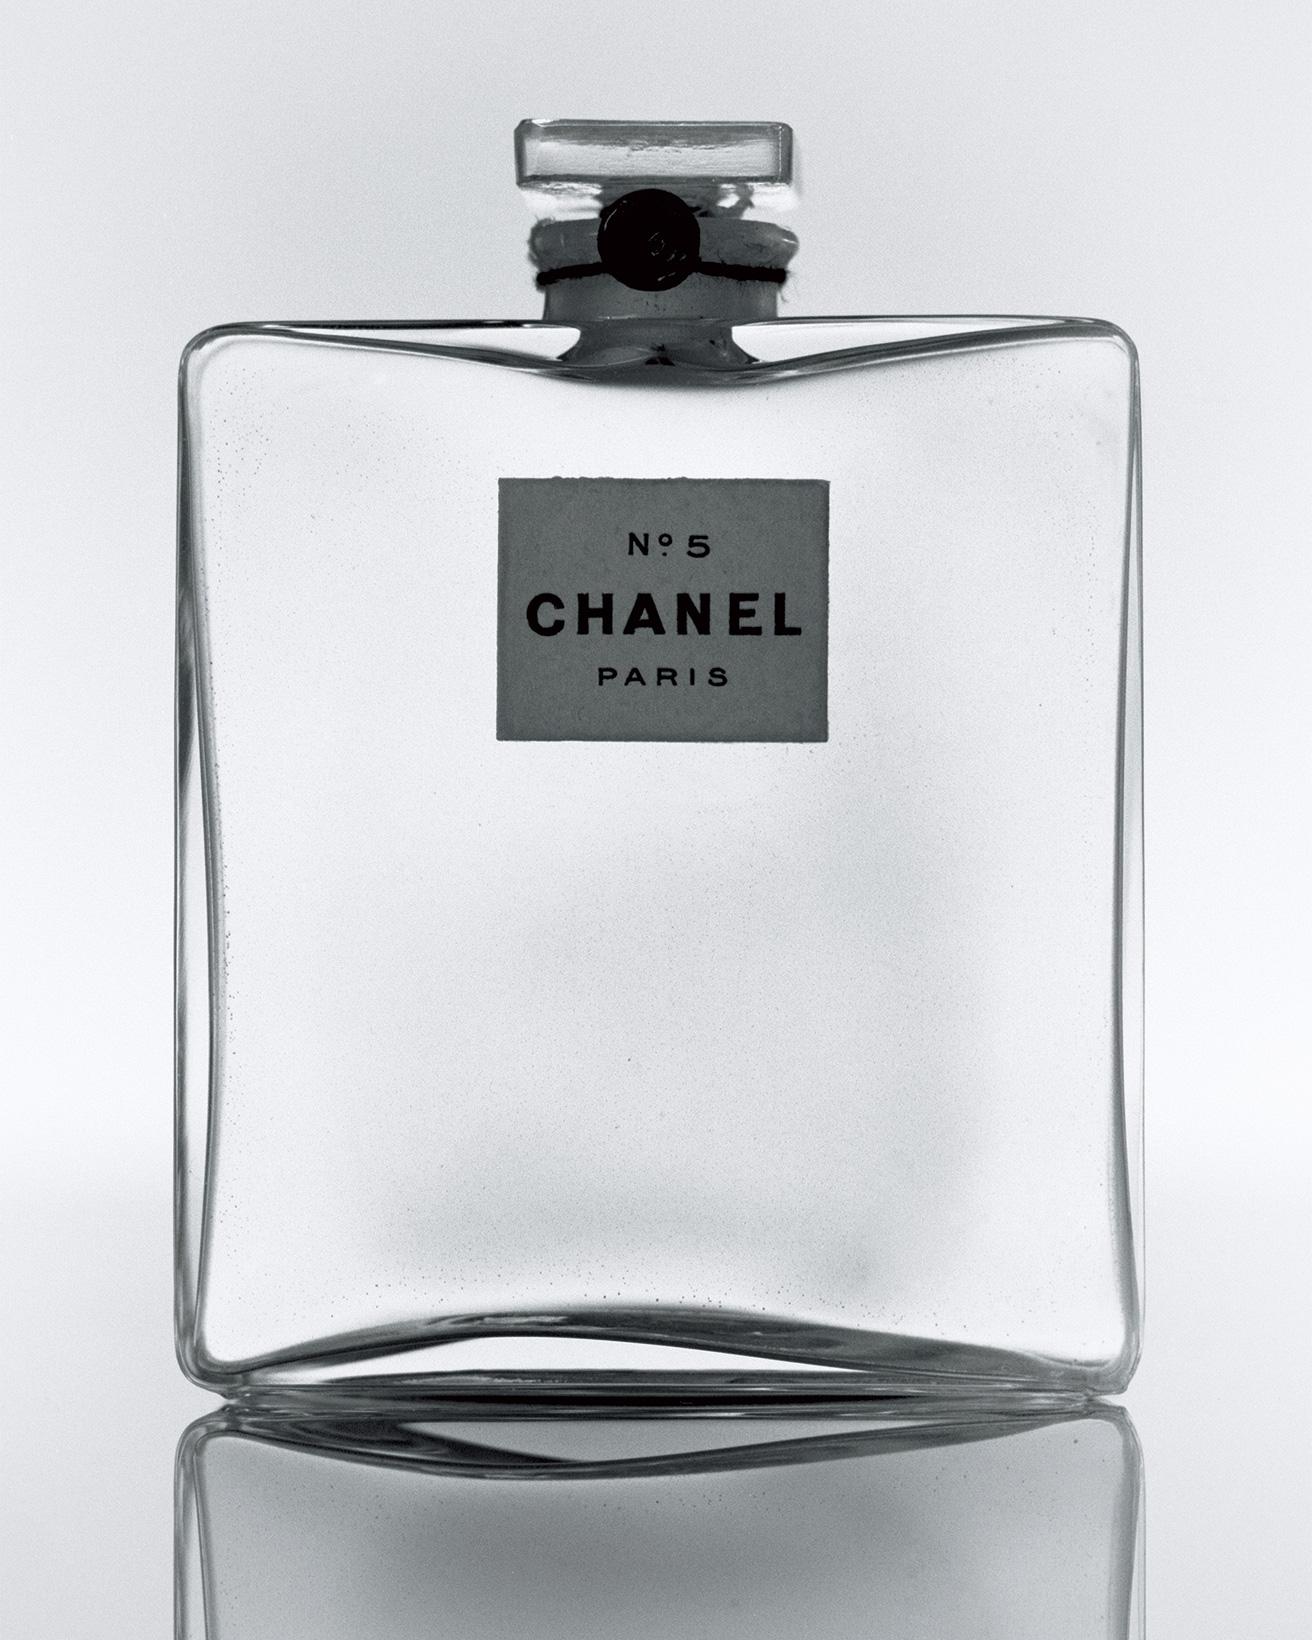 ［1921］現代女性の目に見えないアクセサリー言わずと知れた《シャネル N°5》。20世紀初期において革新的な香水だった。ガラス、木綿糸、封蝋、紙。（パリ、パトリモアンヌ・シャネル）